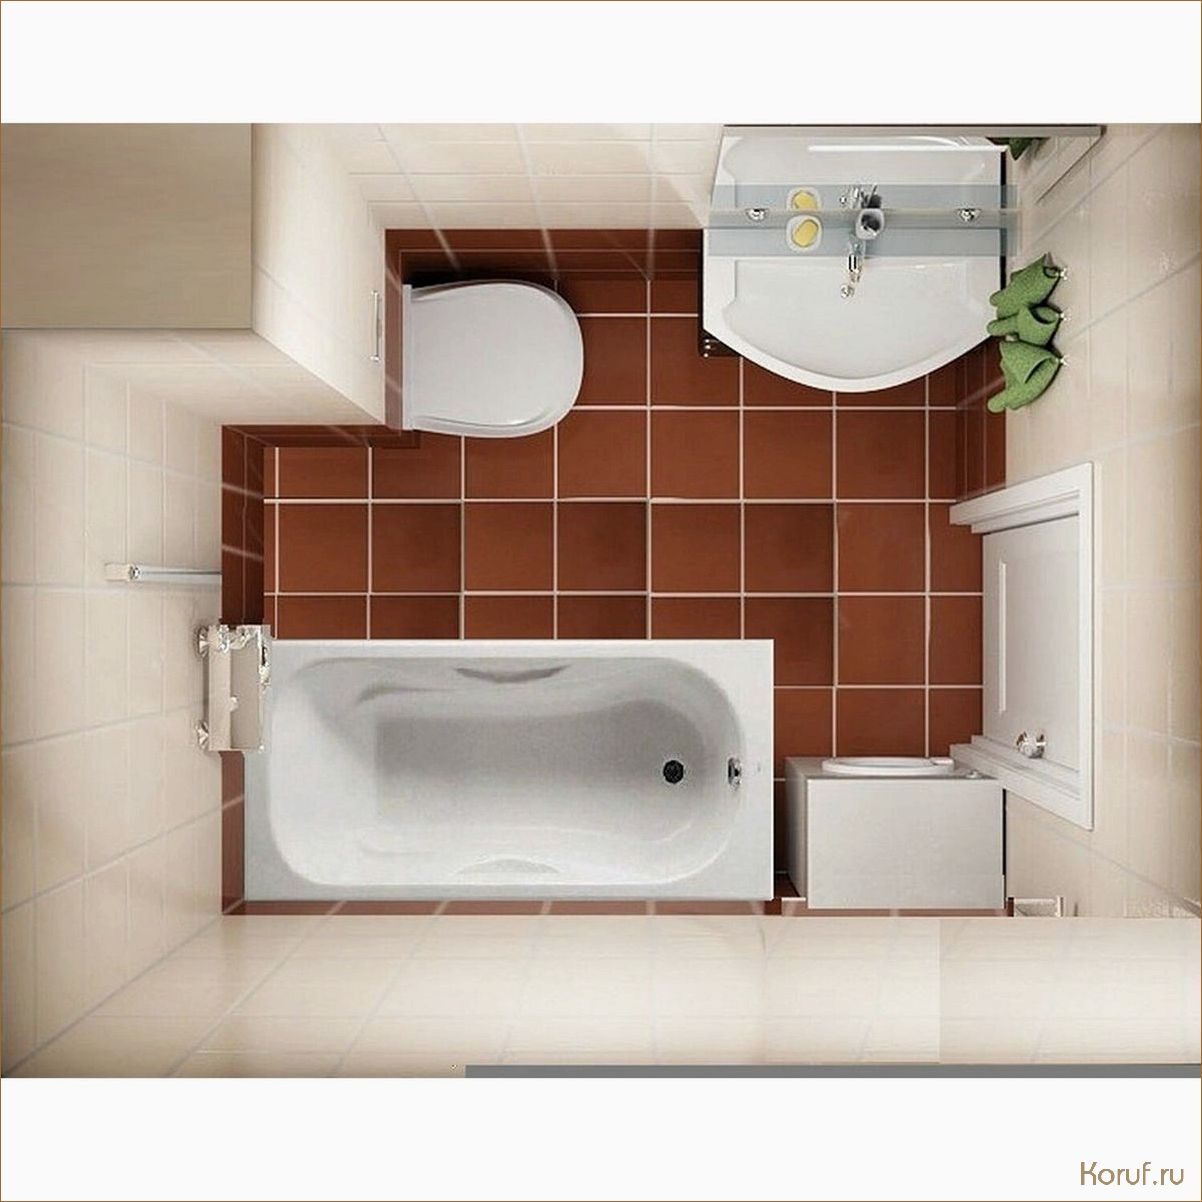 Превратите вашу ванную в оазис спокойствия: советы по дизайну ванной комнаты с квадратной душевой